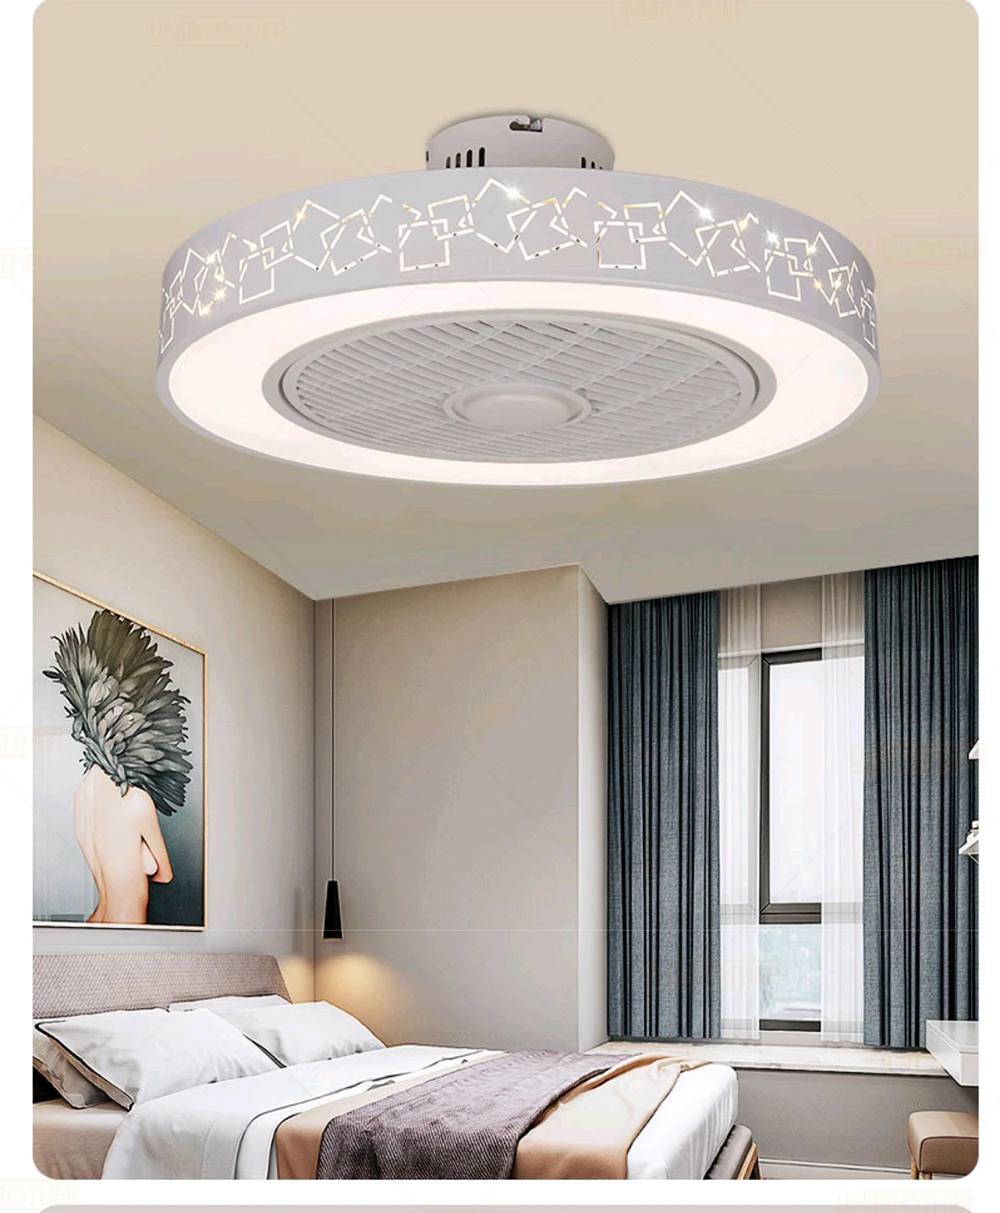 Умный потолочный вентилятор управления с сотовым телефоном Wi-Fi для дома decora 50-55 см потолочный вентилятор с освещением современного освещения круговой